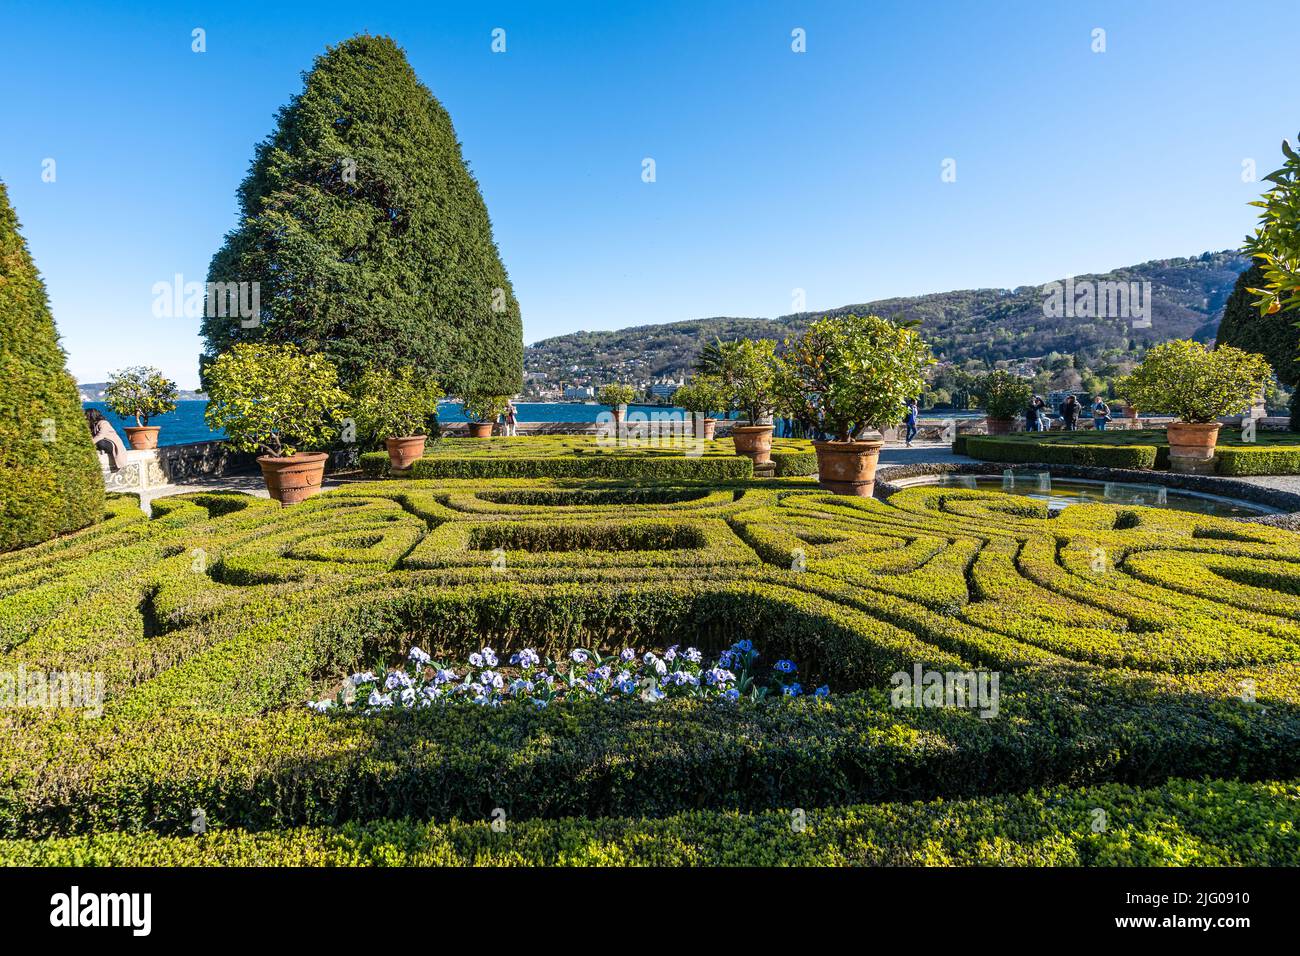 Una terrazza panoramica dei giardini in stile italiano dell'Isola Bella con vista sul Lago maggiore, Stresa, Piemonte, Italia Foto Stock